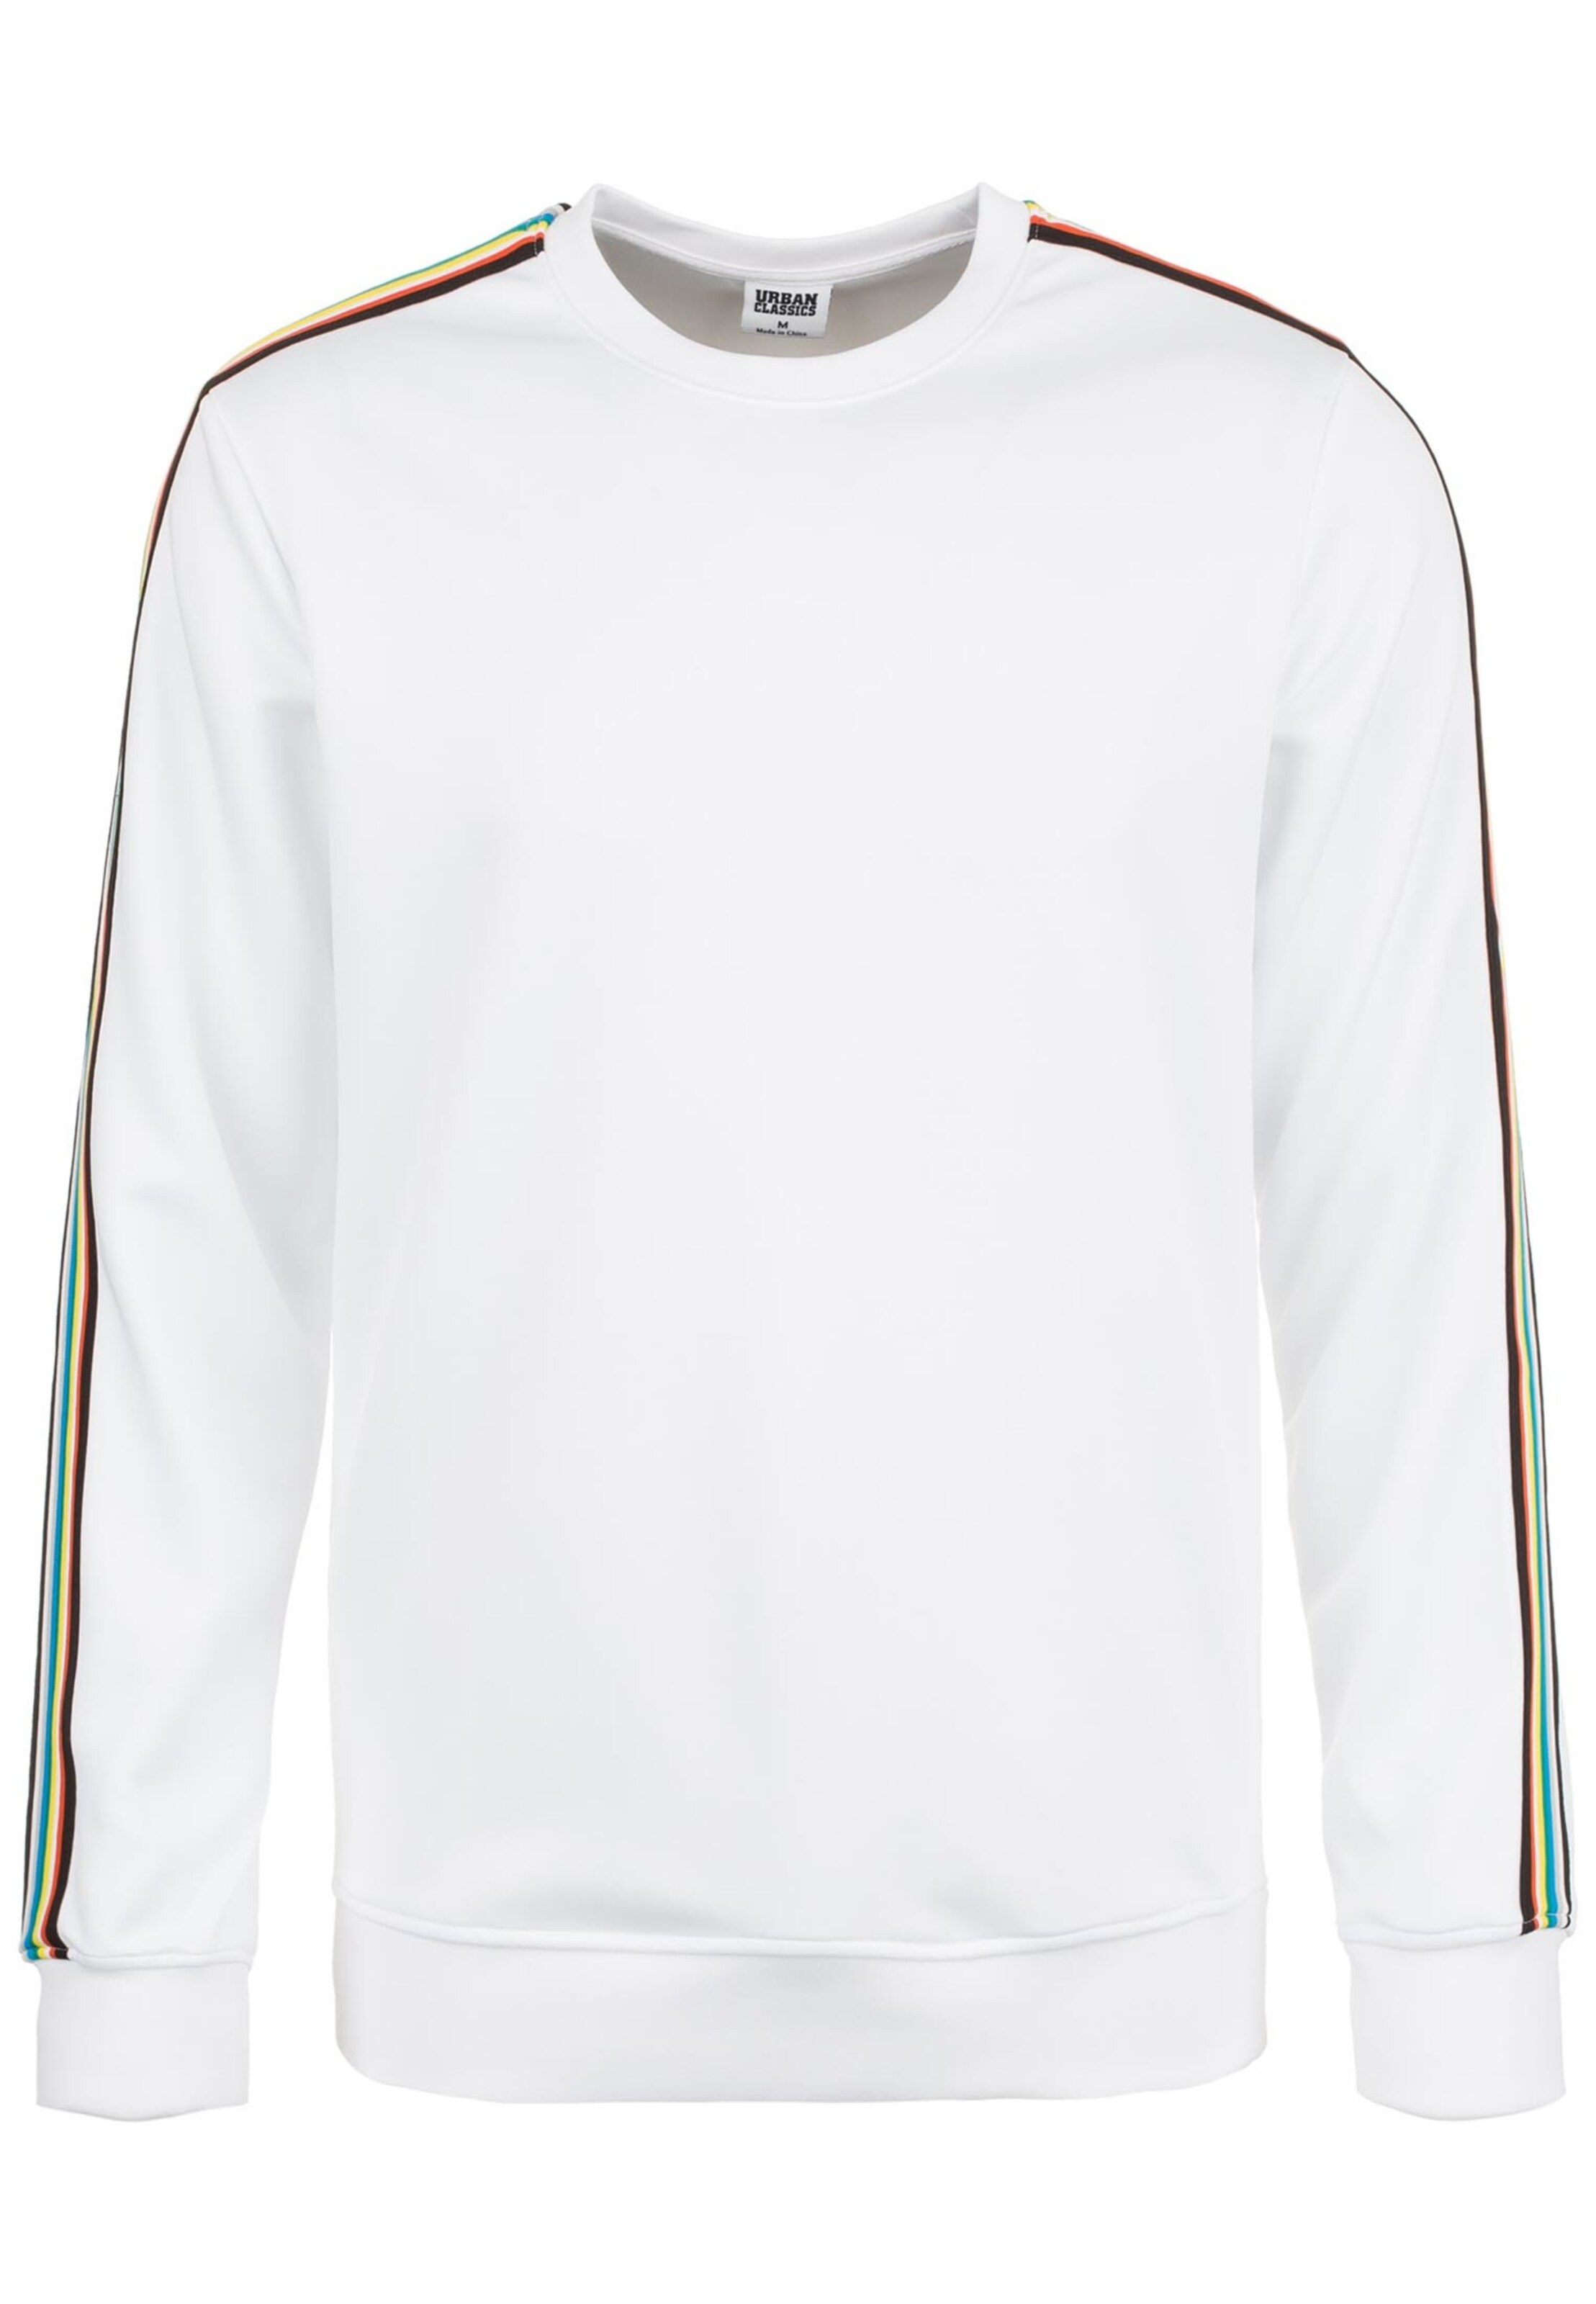 Männer Große Größen Urban Classics Sweatshirt in Weiß - HL58859